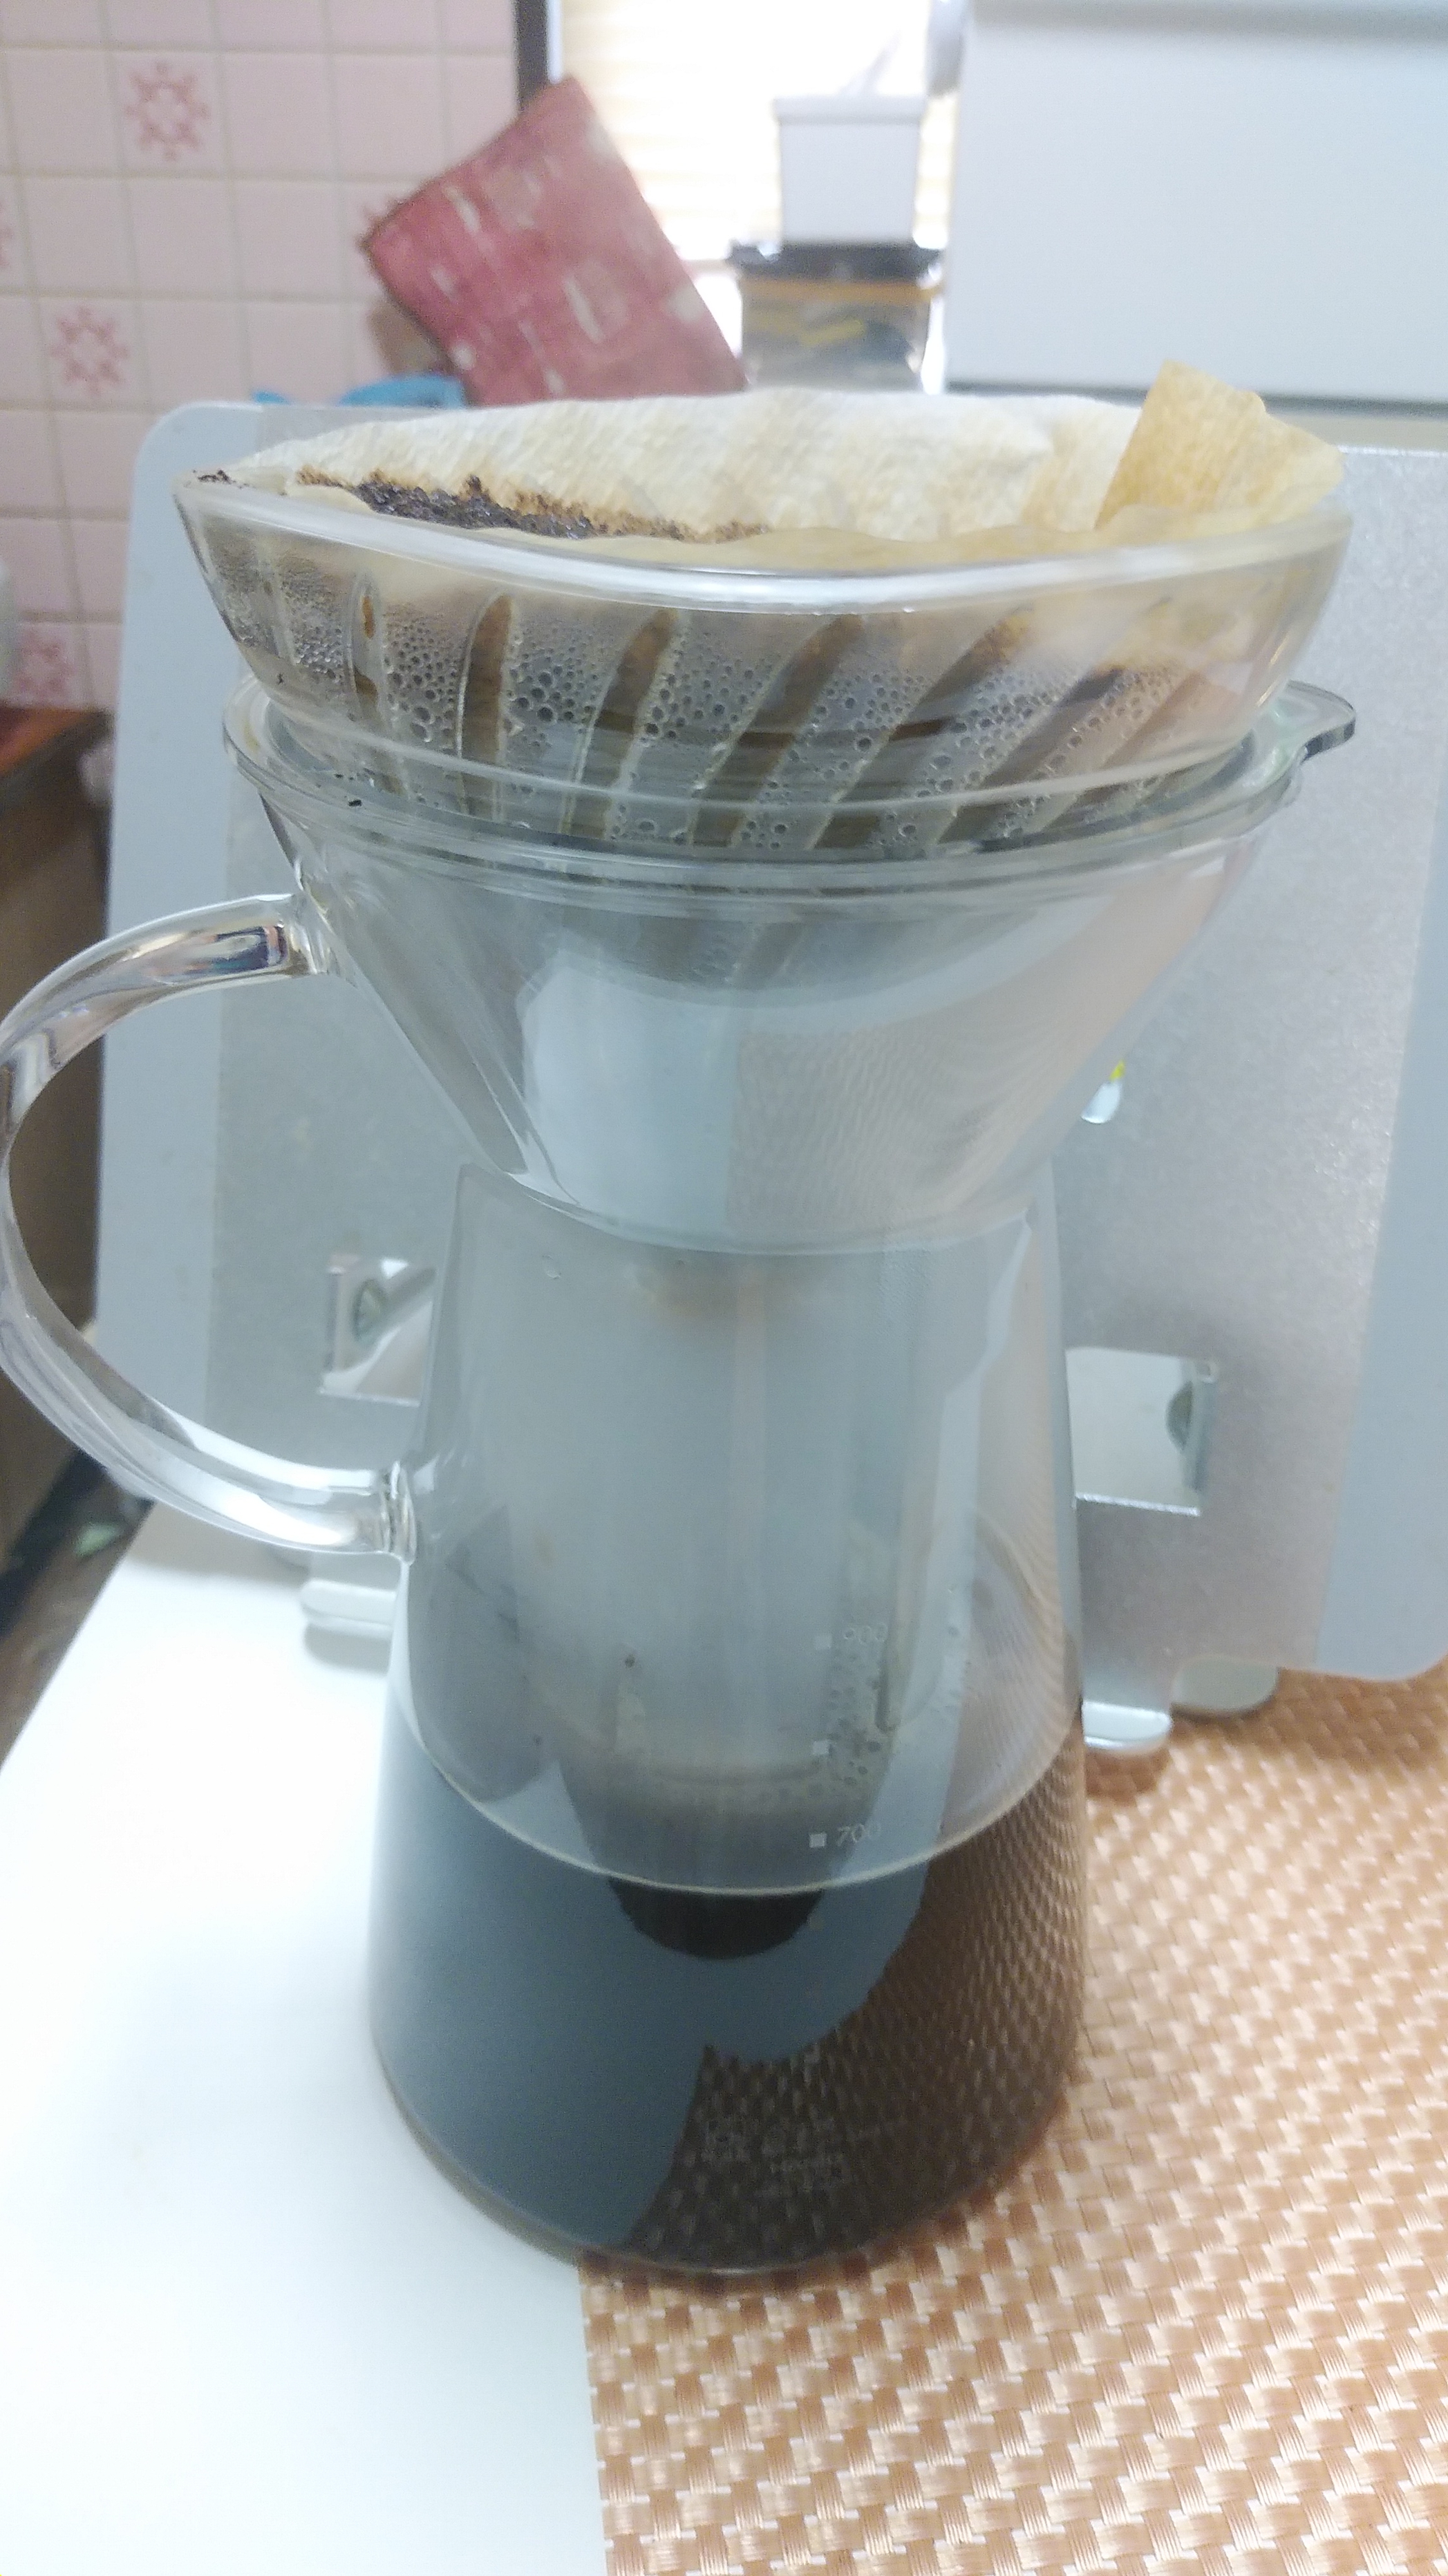 HARIO(ハリオ) マルチ V60 グラス アイスコーヒー メーカー VIG-02Tを使ったまいかるさんのクチコミ画像3